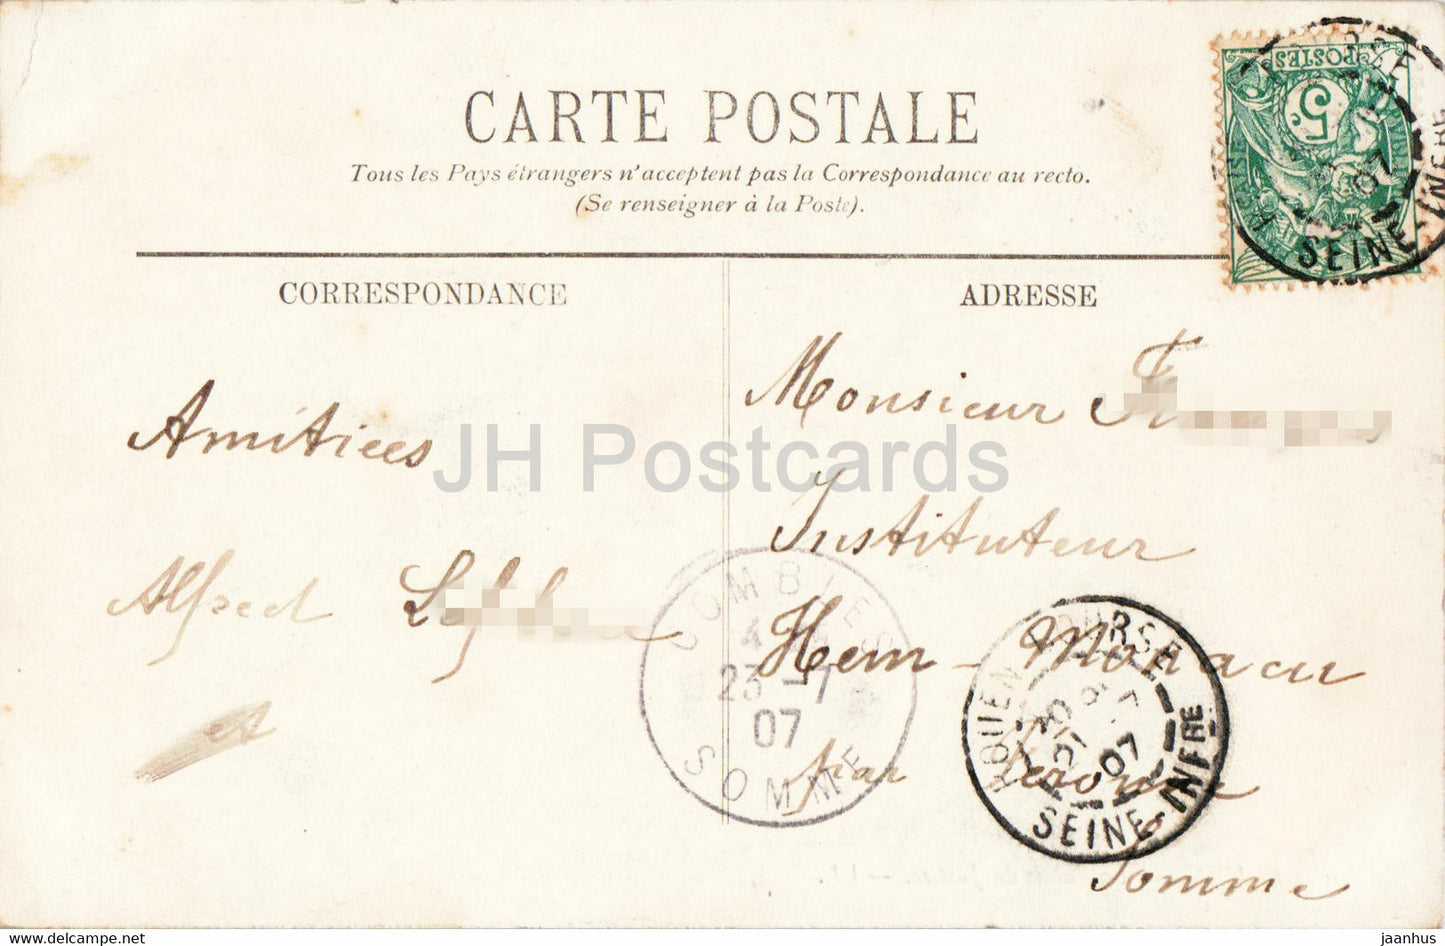 Rouen - Le Palais de Justice - 10 - carte postale ancienne - 1907 - France - oblitéré